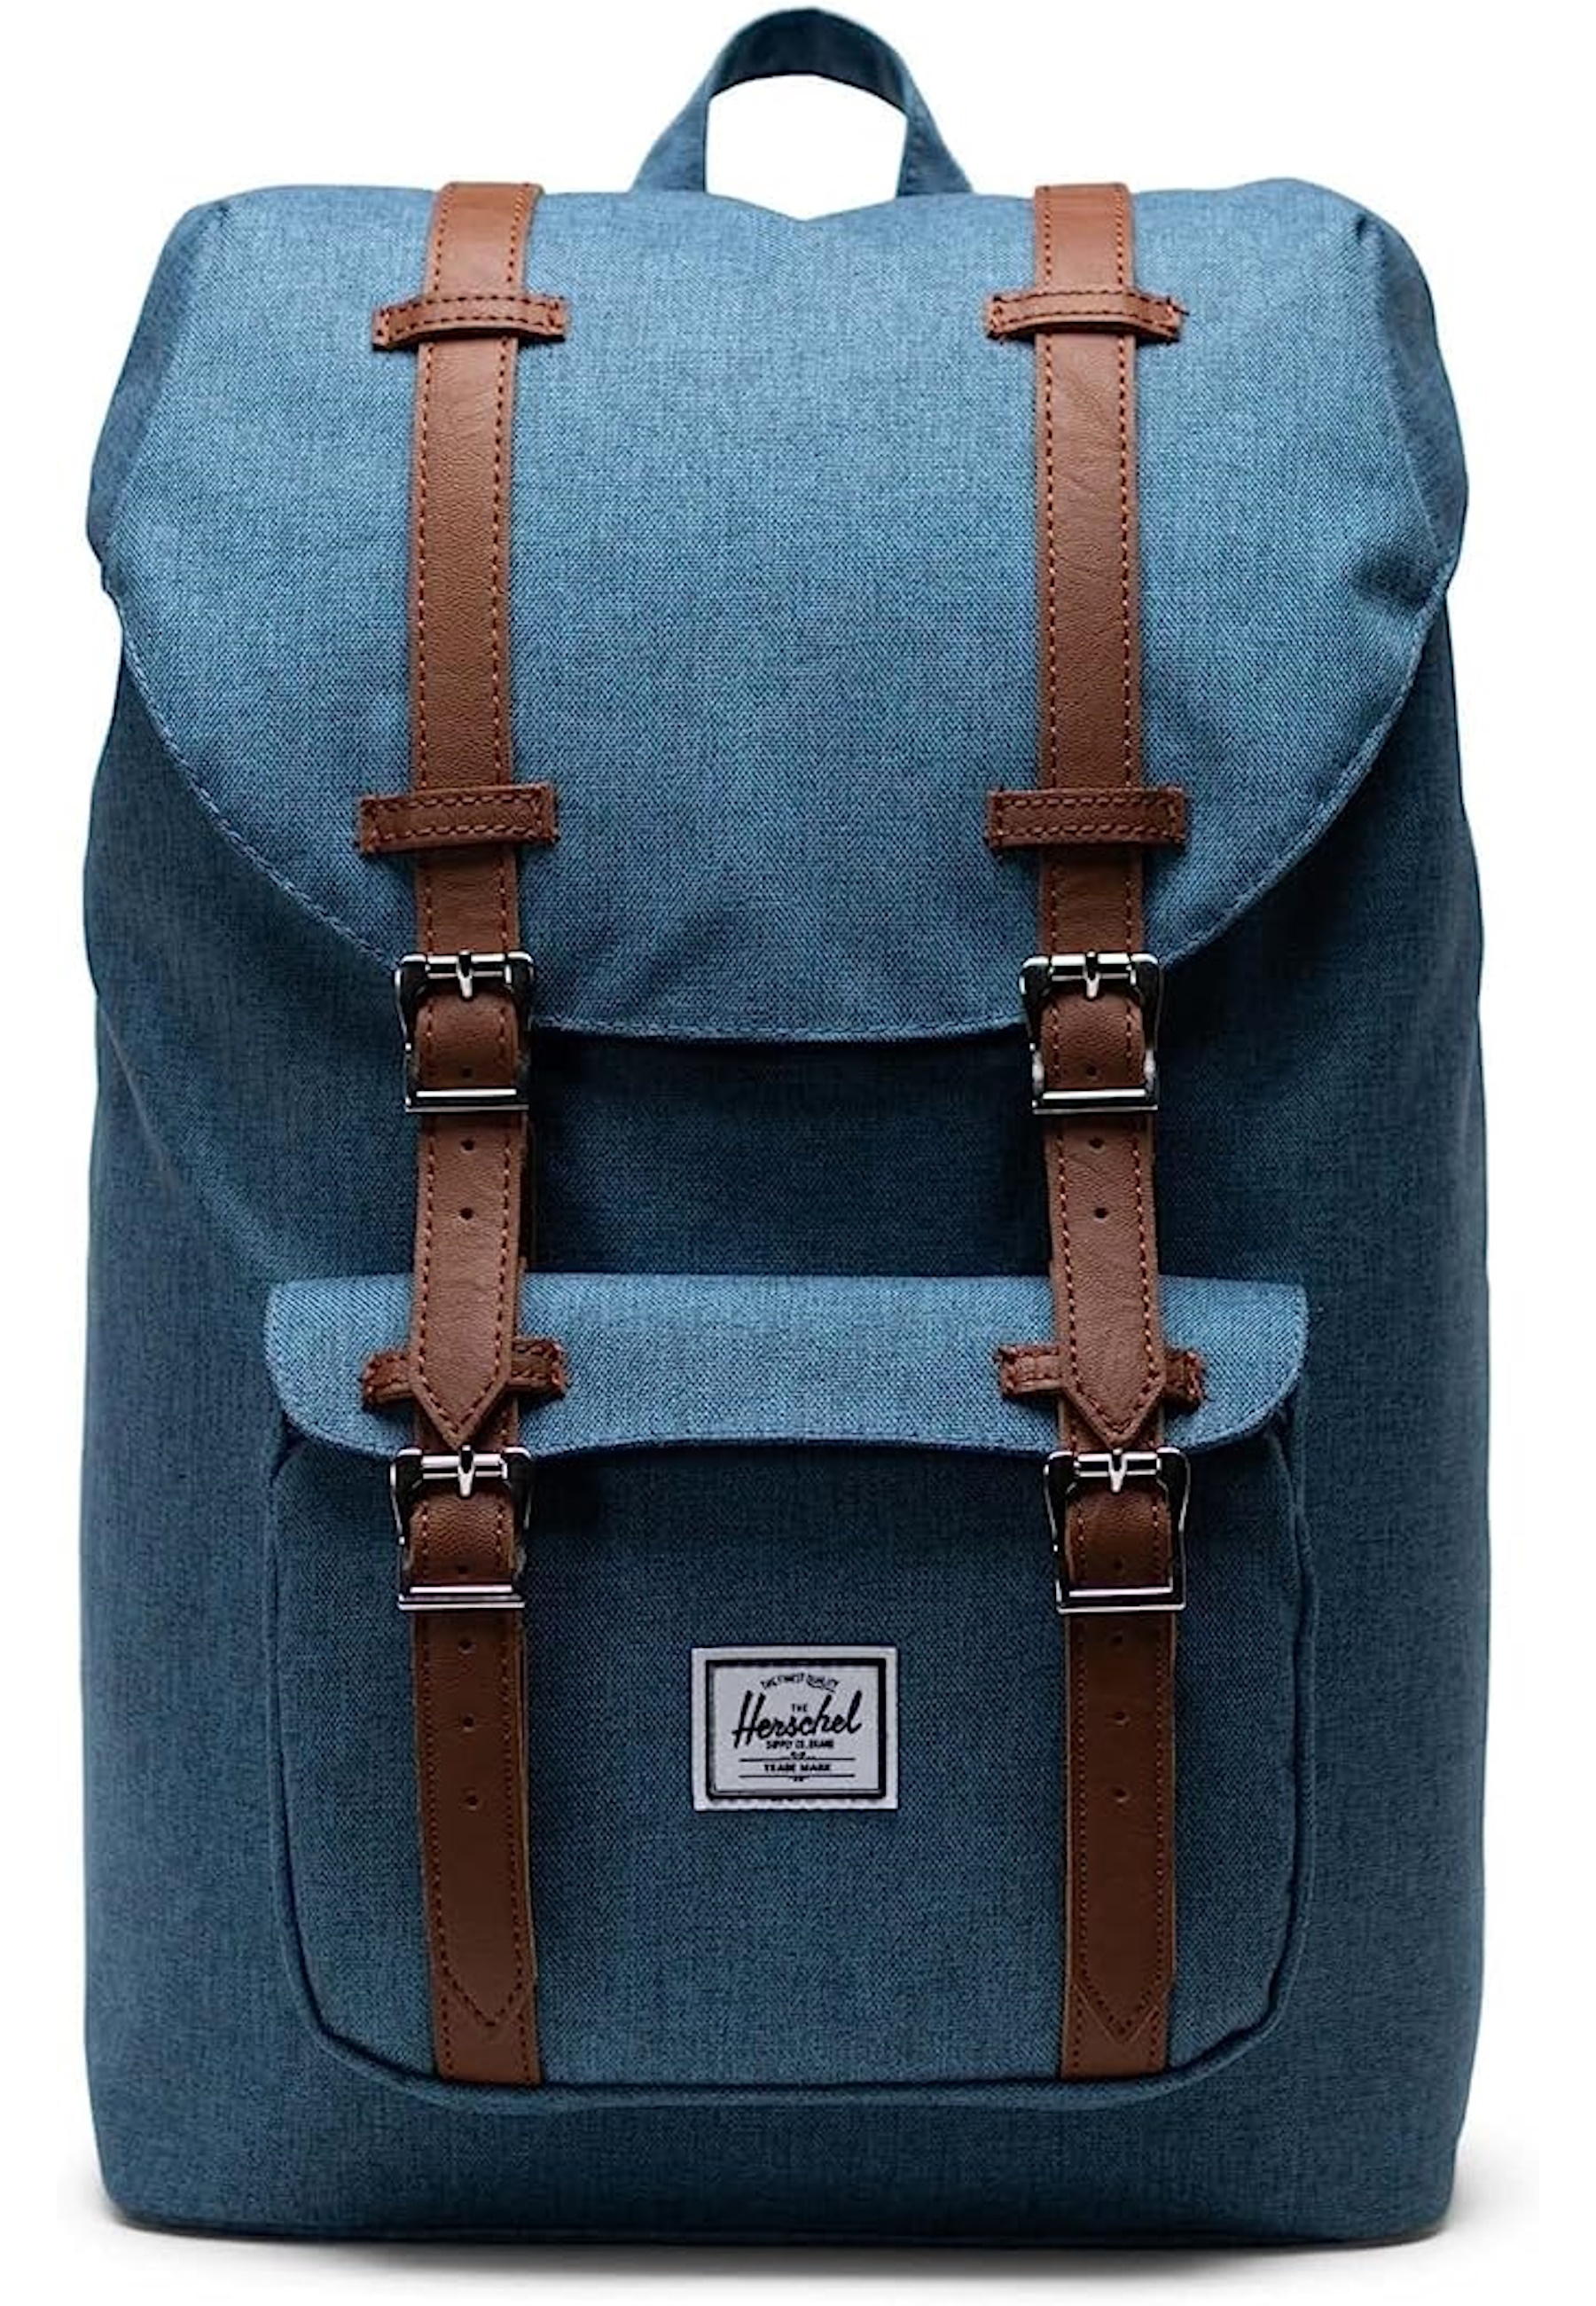 Рюкзак Herschel 'Little America Mid', синий рюкзак little america для планшета 15 единый размер синий